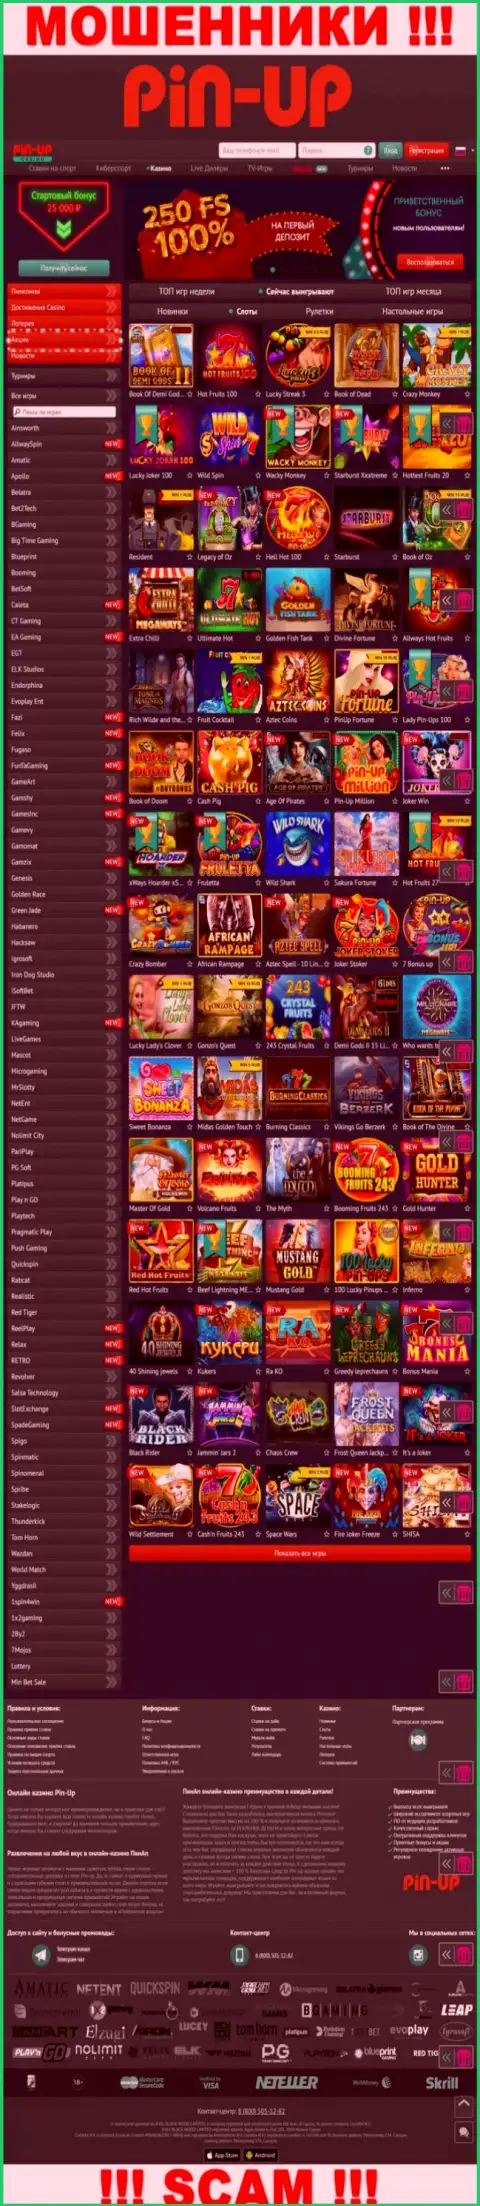 Pin-Up Casino - это официальный информационный сервис интернет-ворюг ПинАпКазино